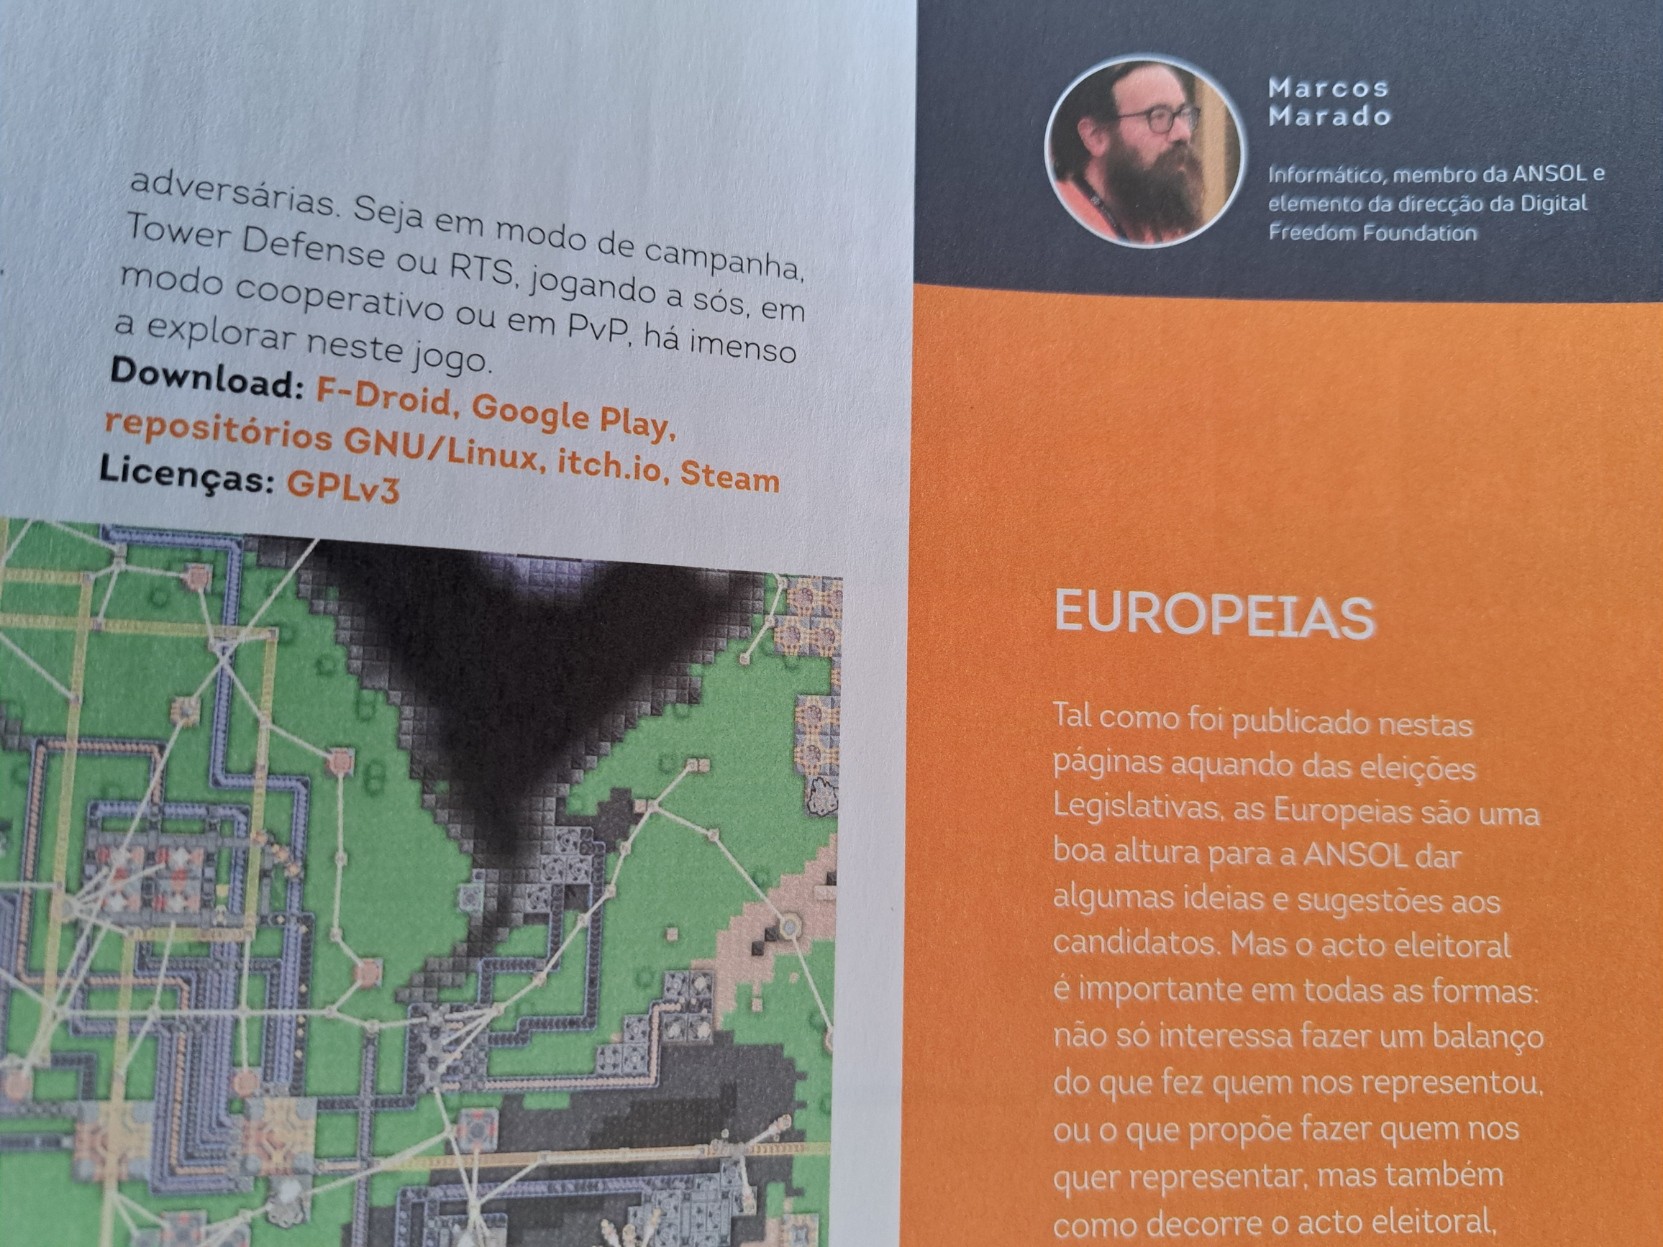 Uma foto de parte da página 25 da PCGuia.  No lado esquerdo, parte de uma captura de ecrã do jogo "Mindustry".  No lado direito, o início do artigo "Europeias", por Marcos Marado.